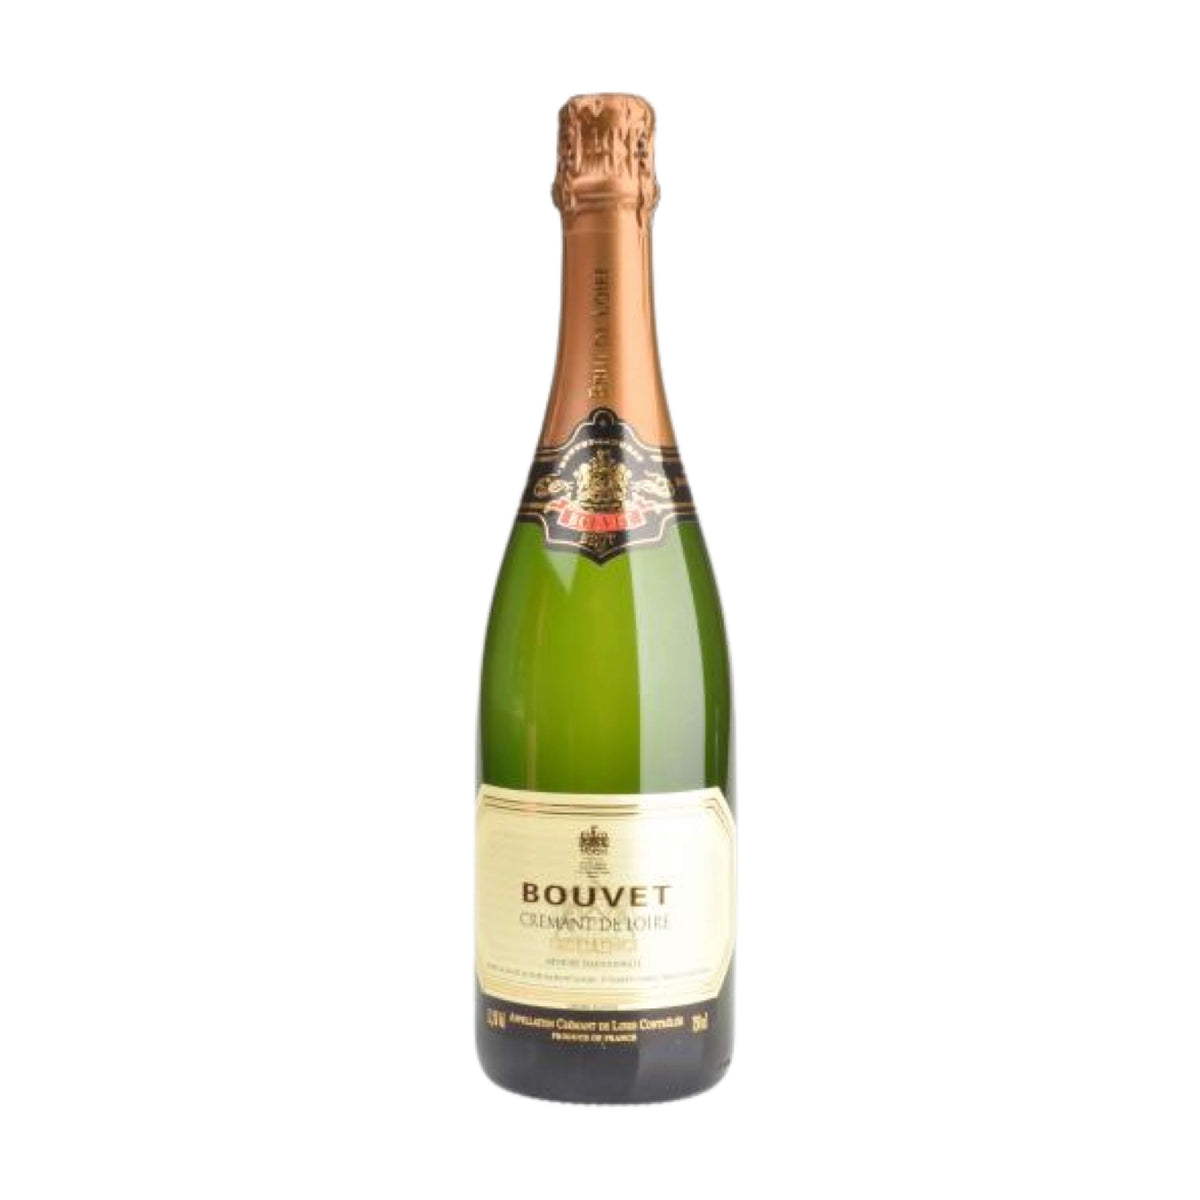 Bouvet Ladubay-Schaumwein-Chenin Blanc, Chardonnay-Excellence Crémant de Loire Brut AOP-WINECOM